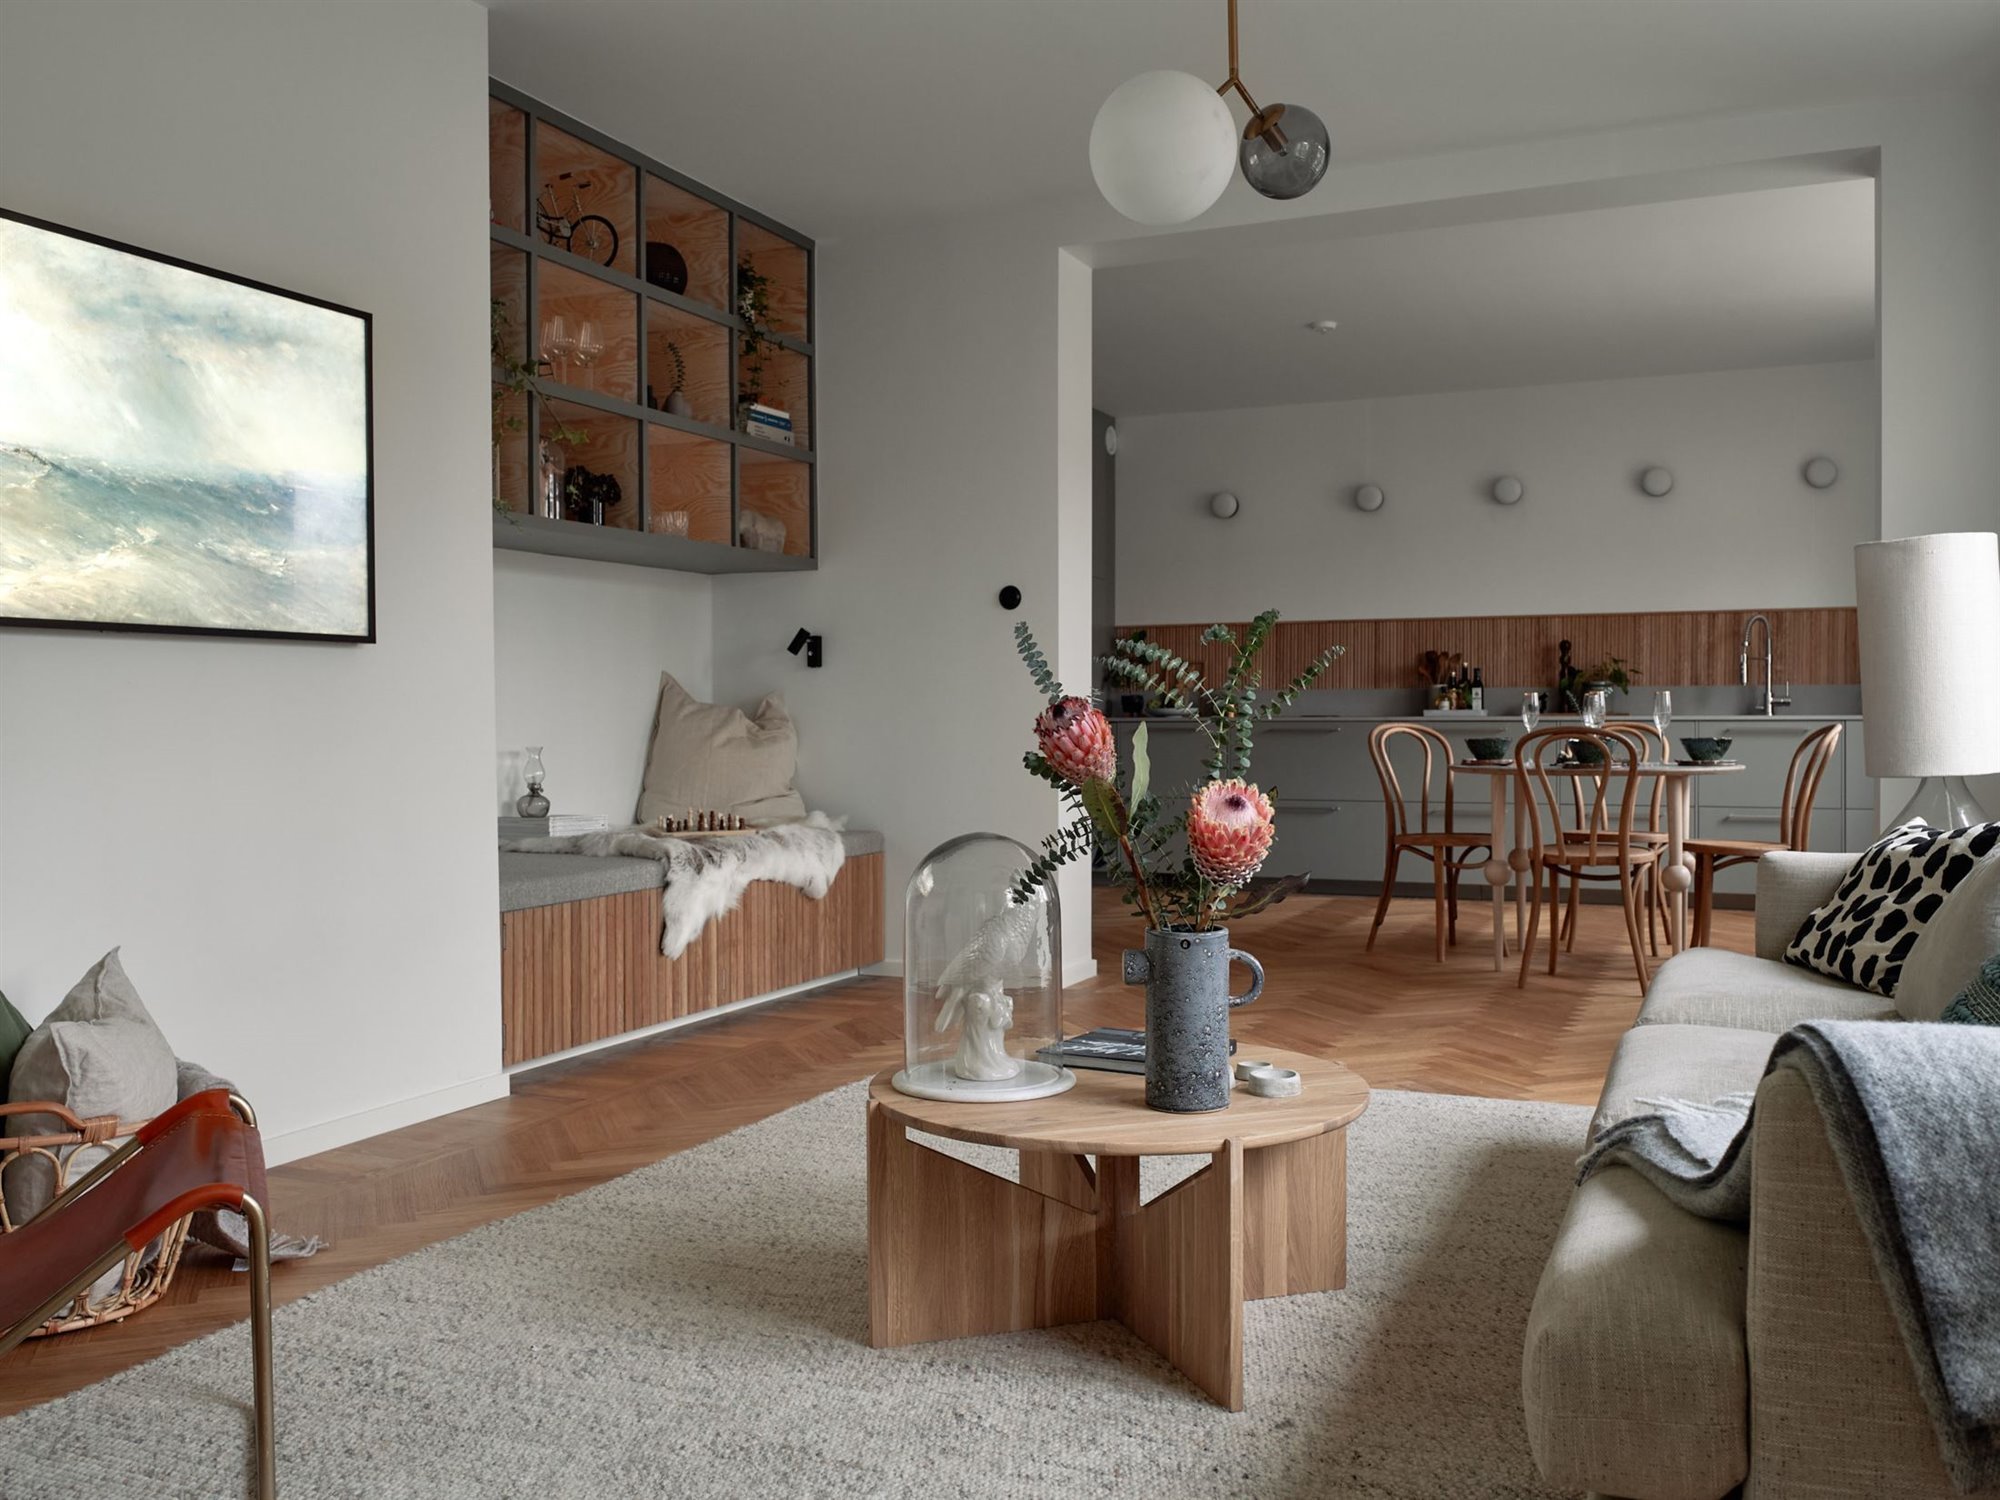 Piso en Suecia con interiores de estilo nordico salon comedor banco a medida